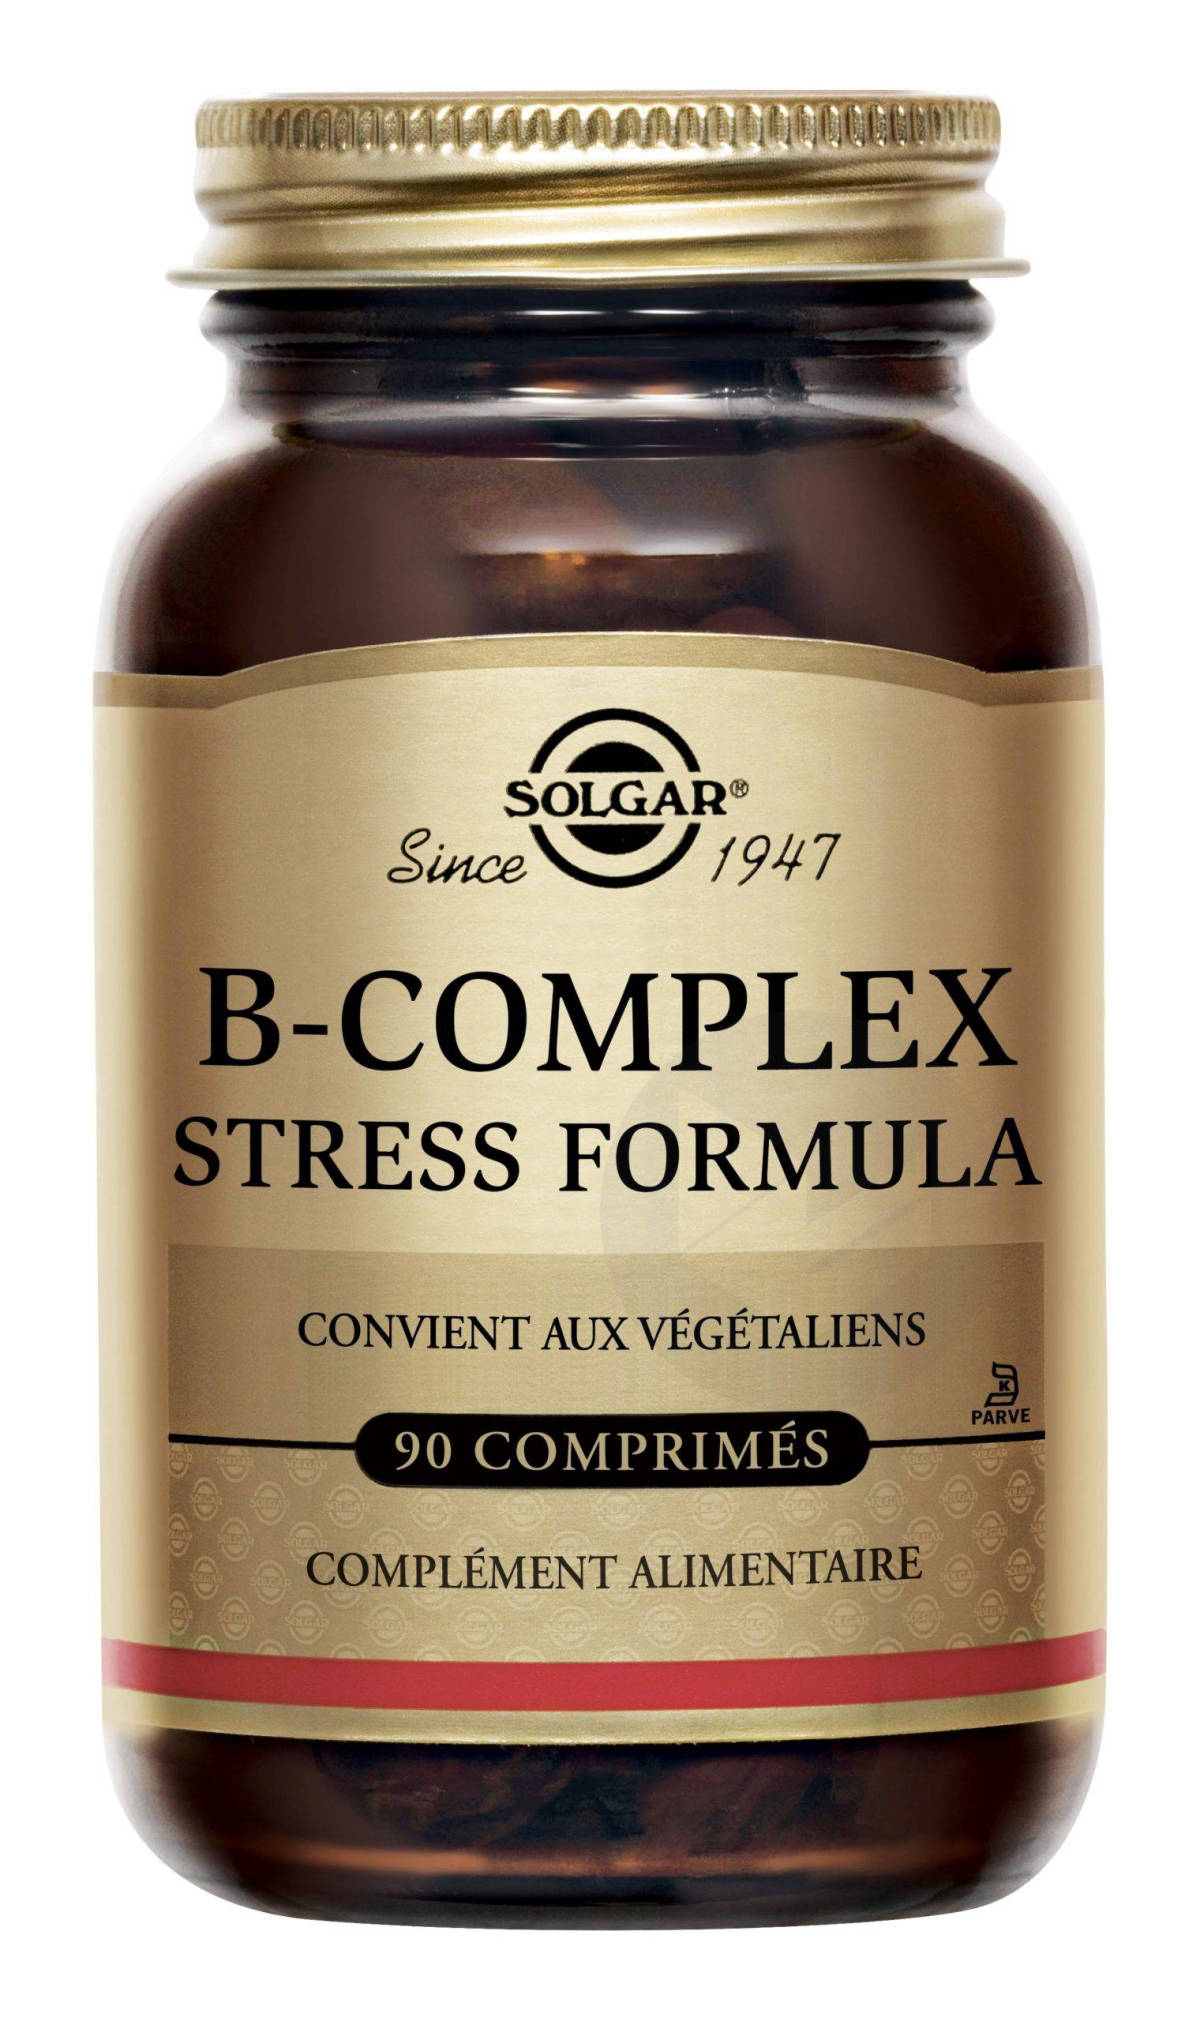 B-Complex Stress Formula 90 comprimés